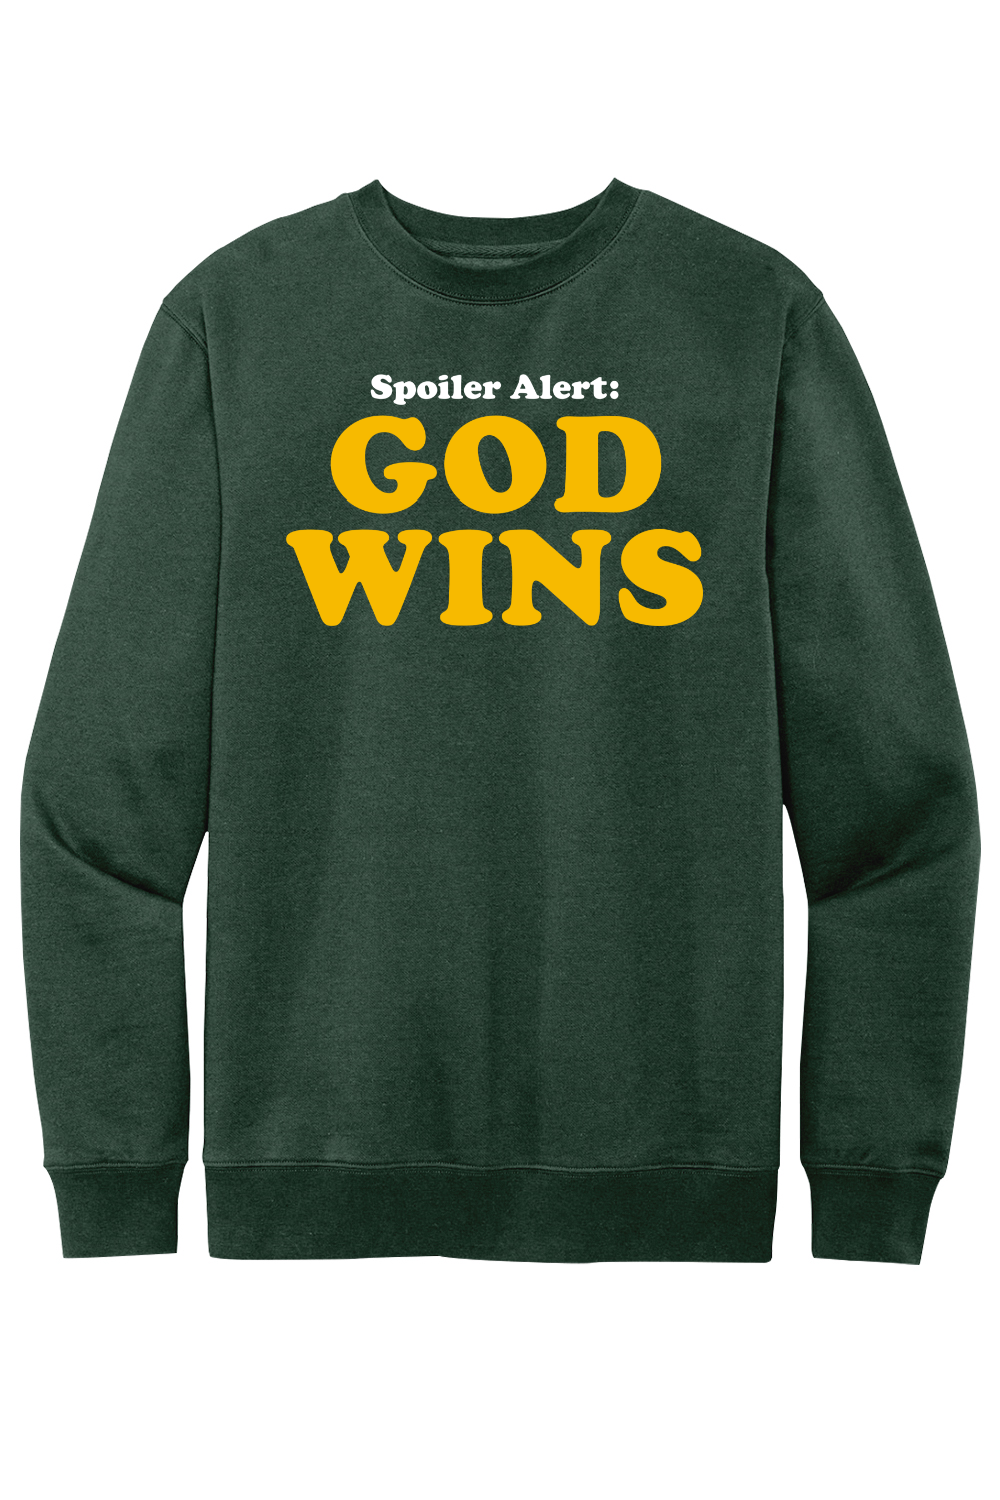 Spoiler Alert - God Wins - Crewneck Sweatshirt